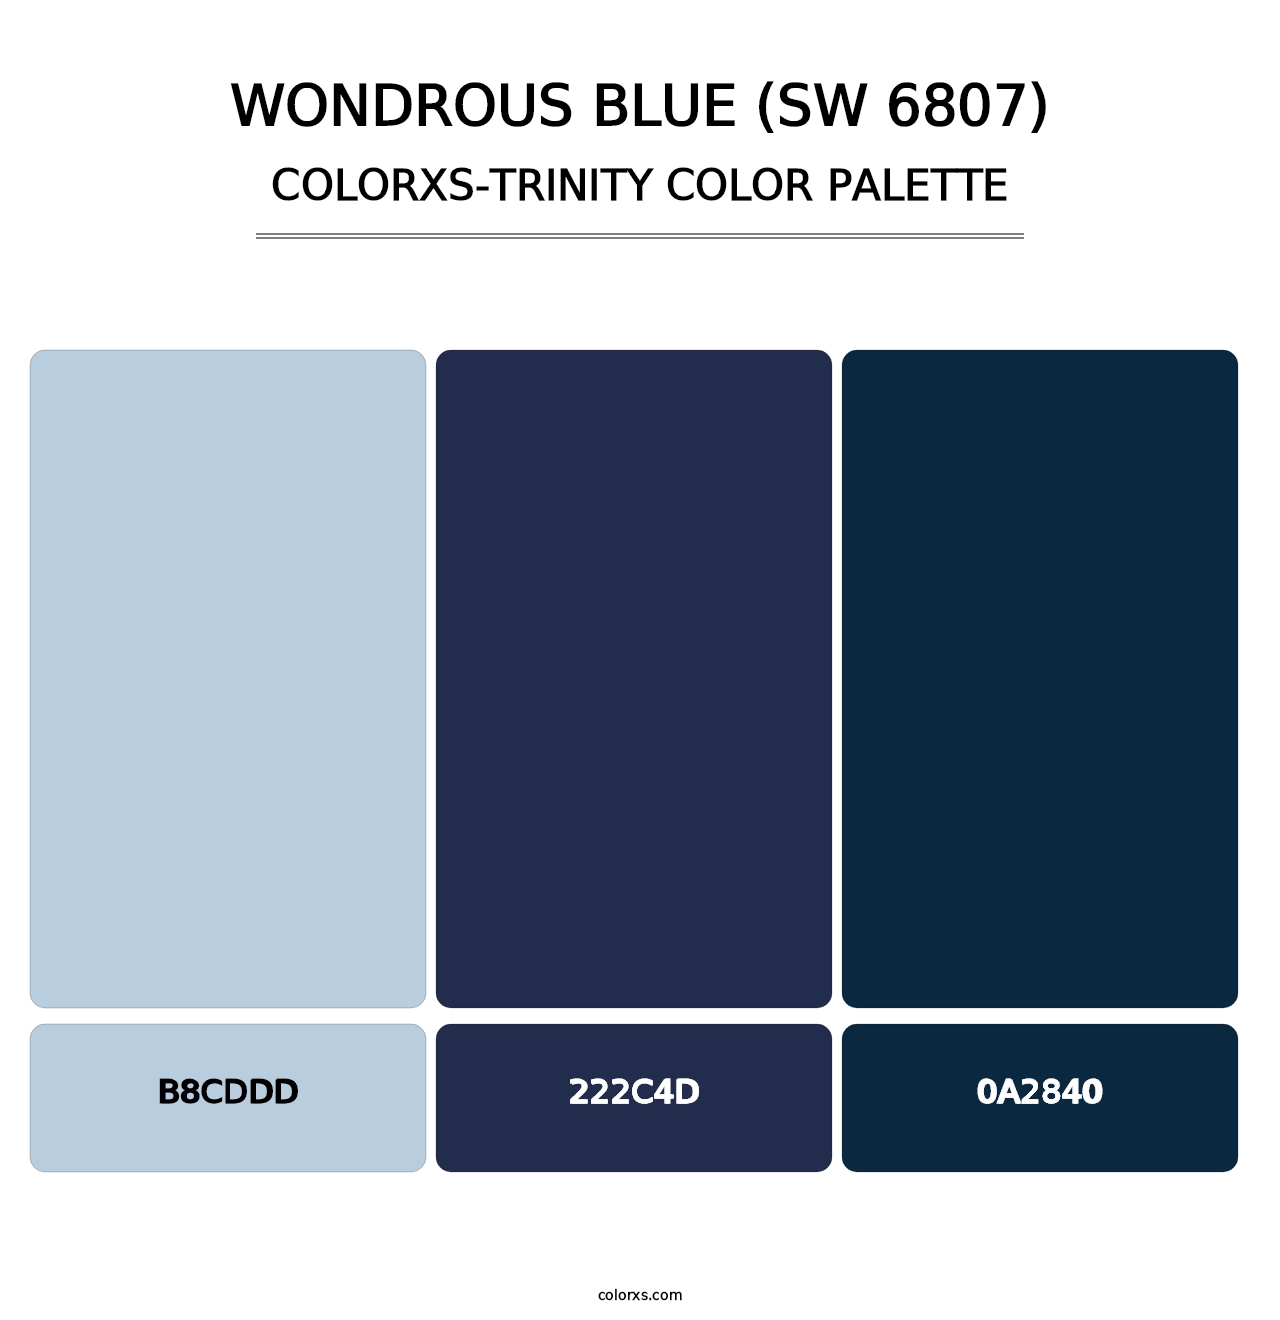 Wondrous Blue (SW 6807) - Colorxs Trinity Palette